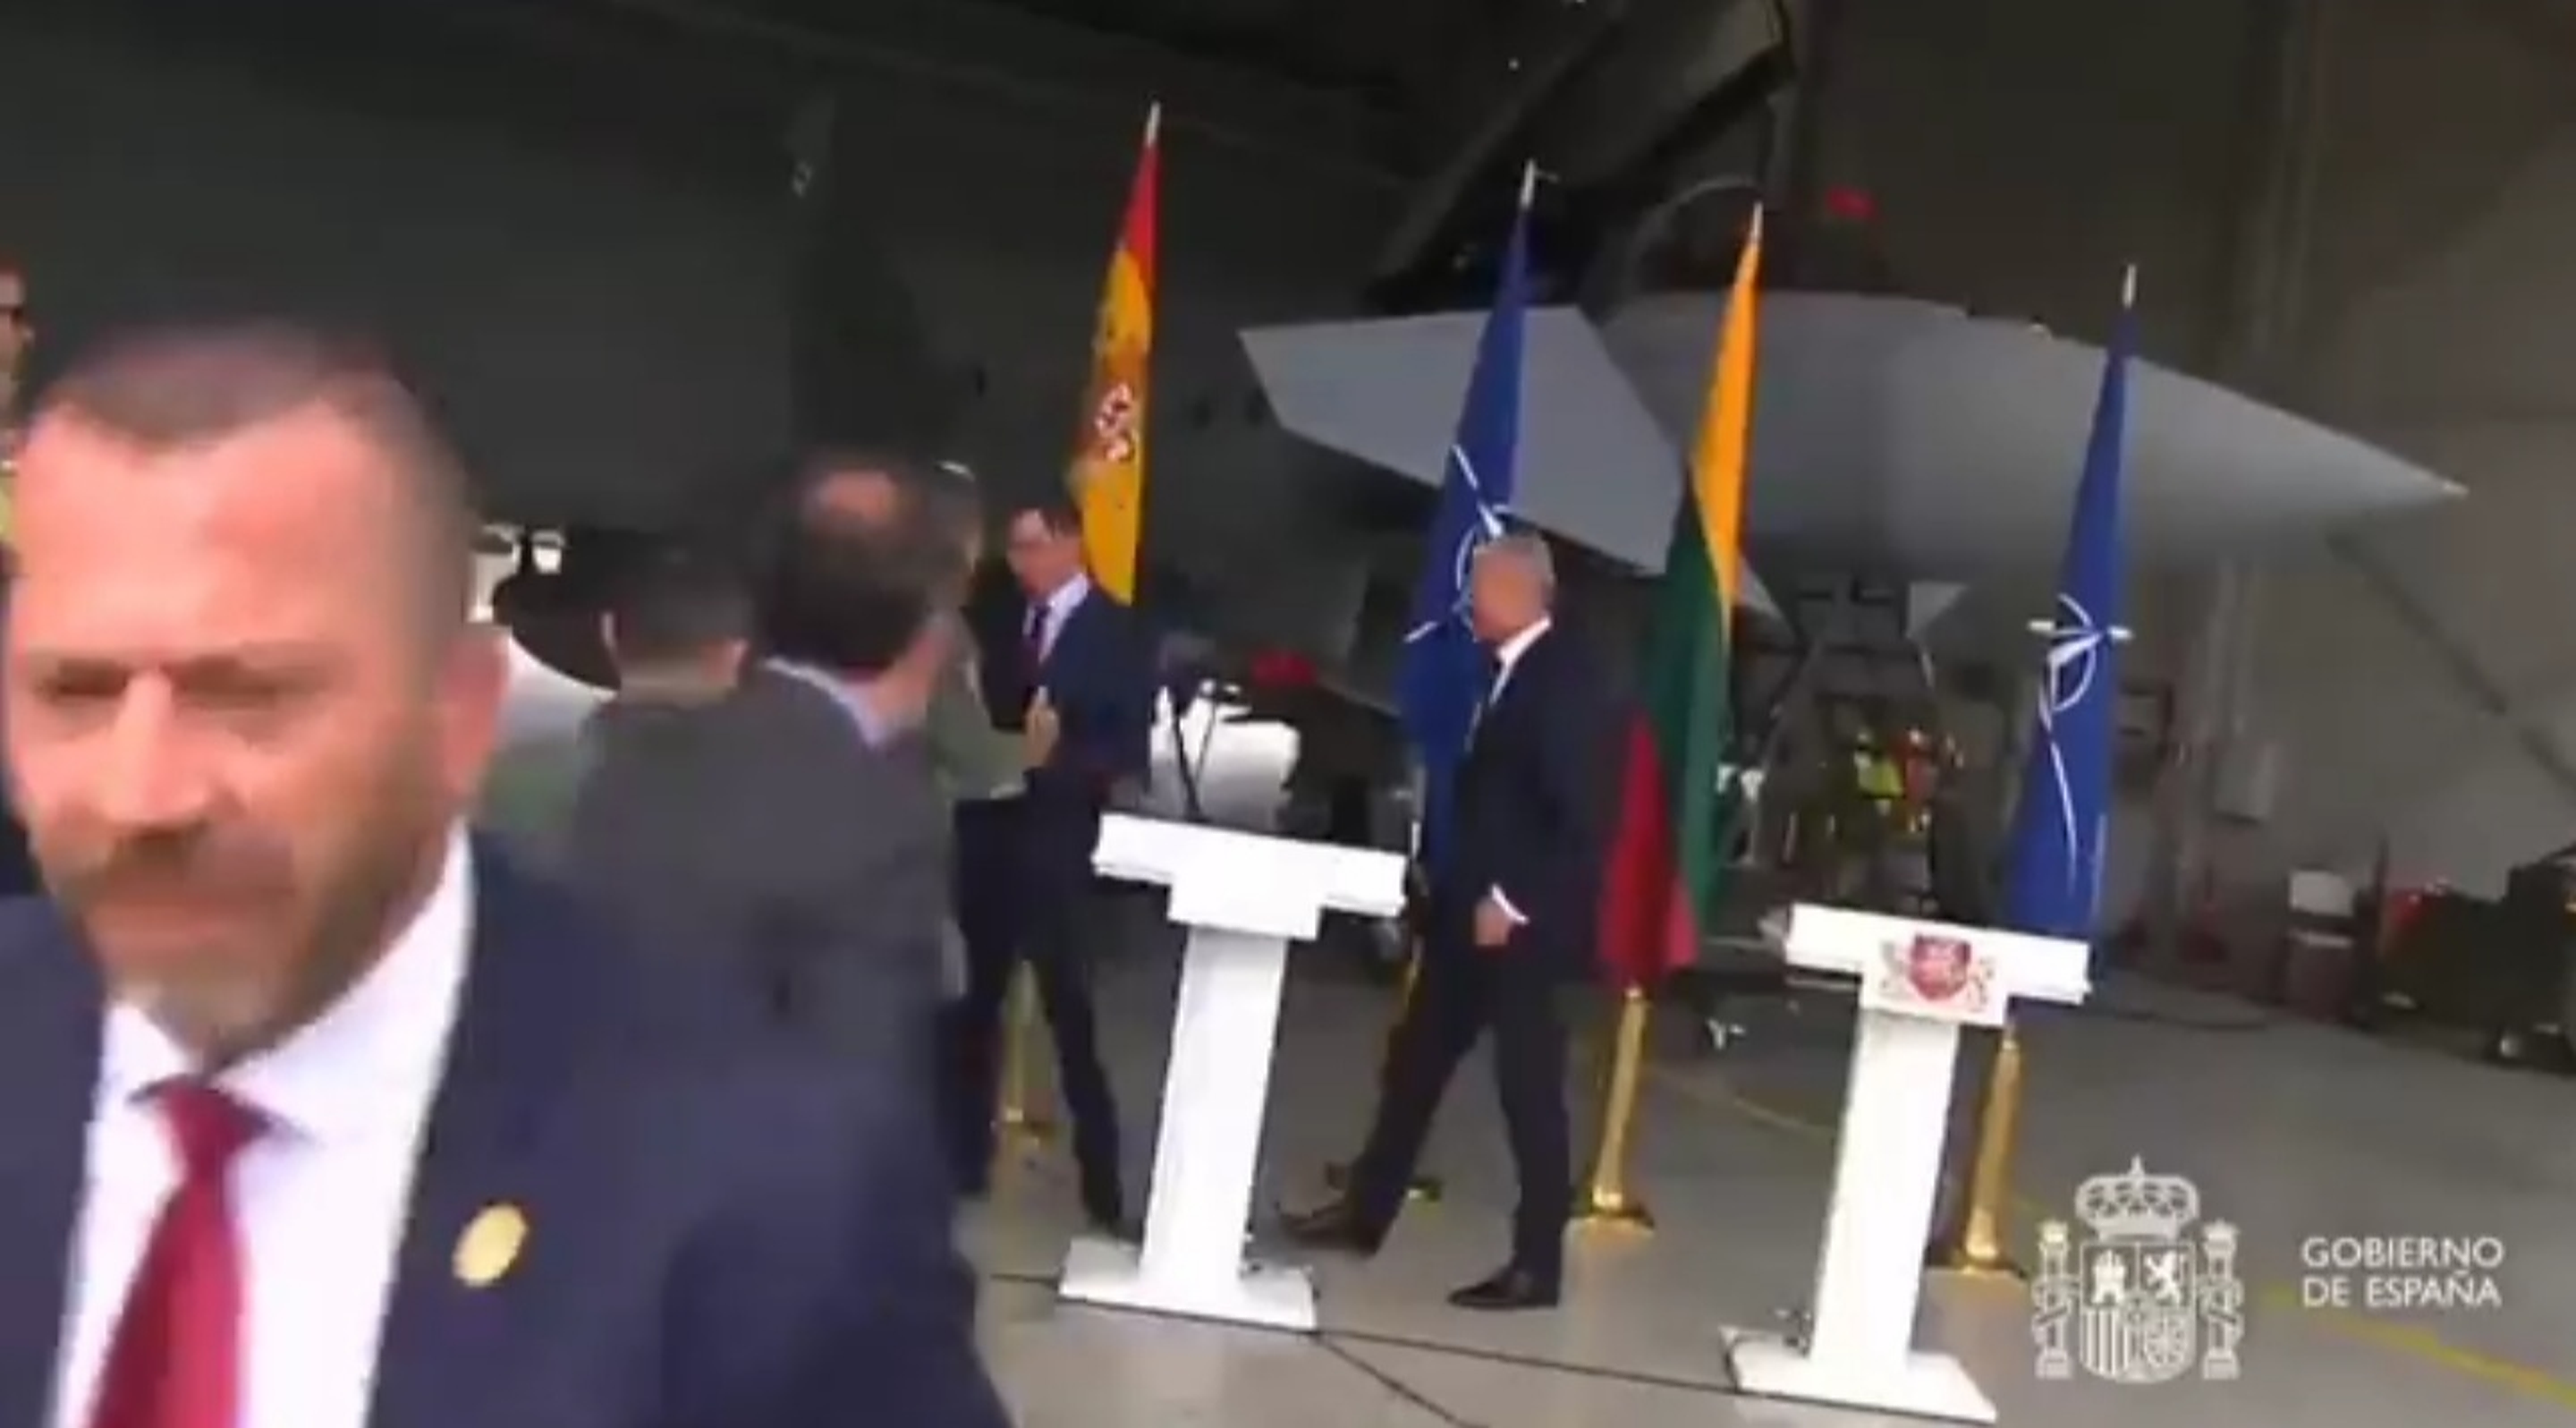 Alertă| Conferința la care participau premierul spaniol şi preşedintele lituanian, întreruptă subit. O aeronavă neidentificată se apropie de baza NATO în care se află